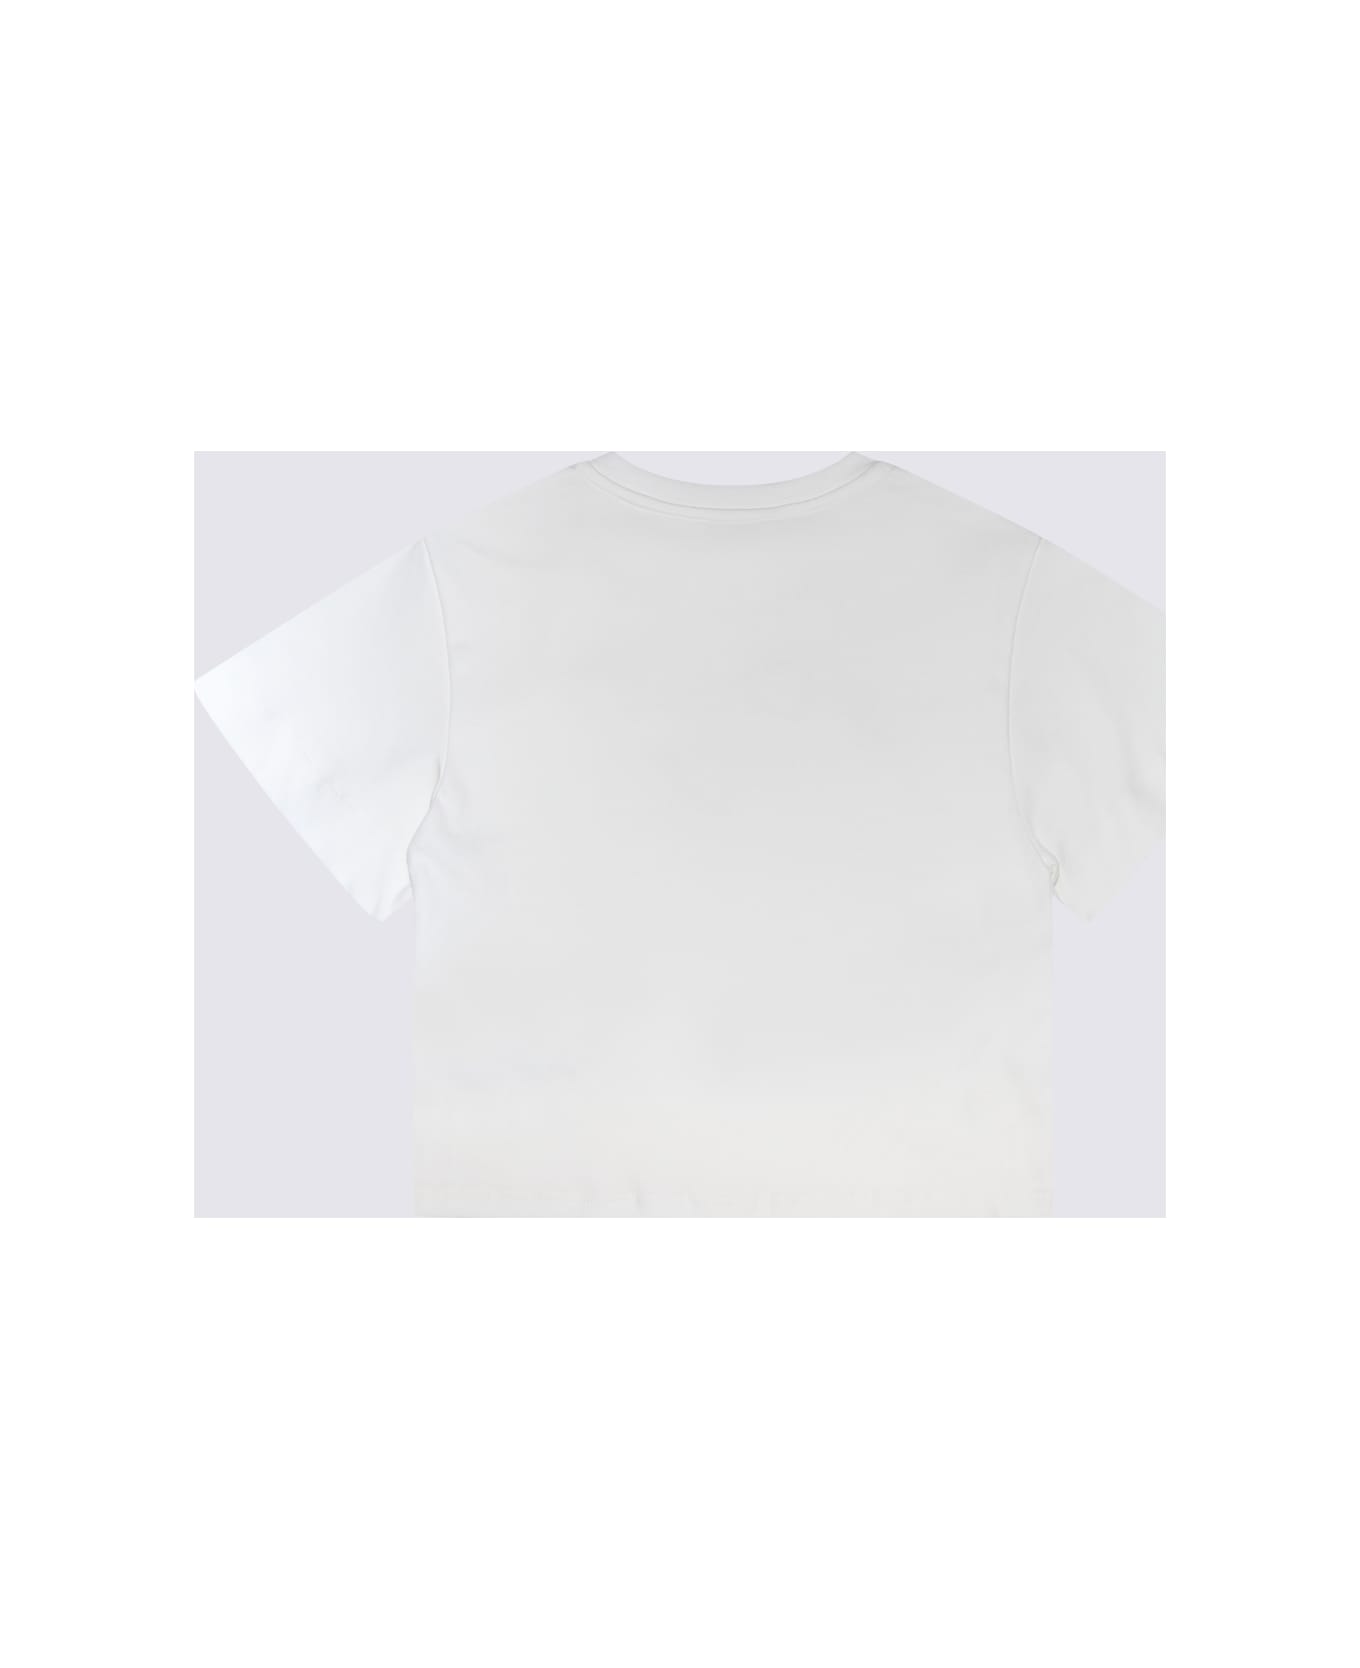 Chloé White Cotton T-shirt - Beige